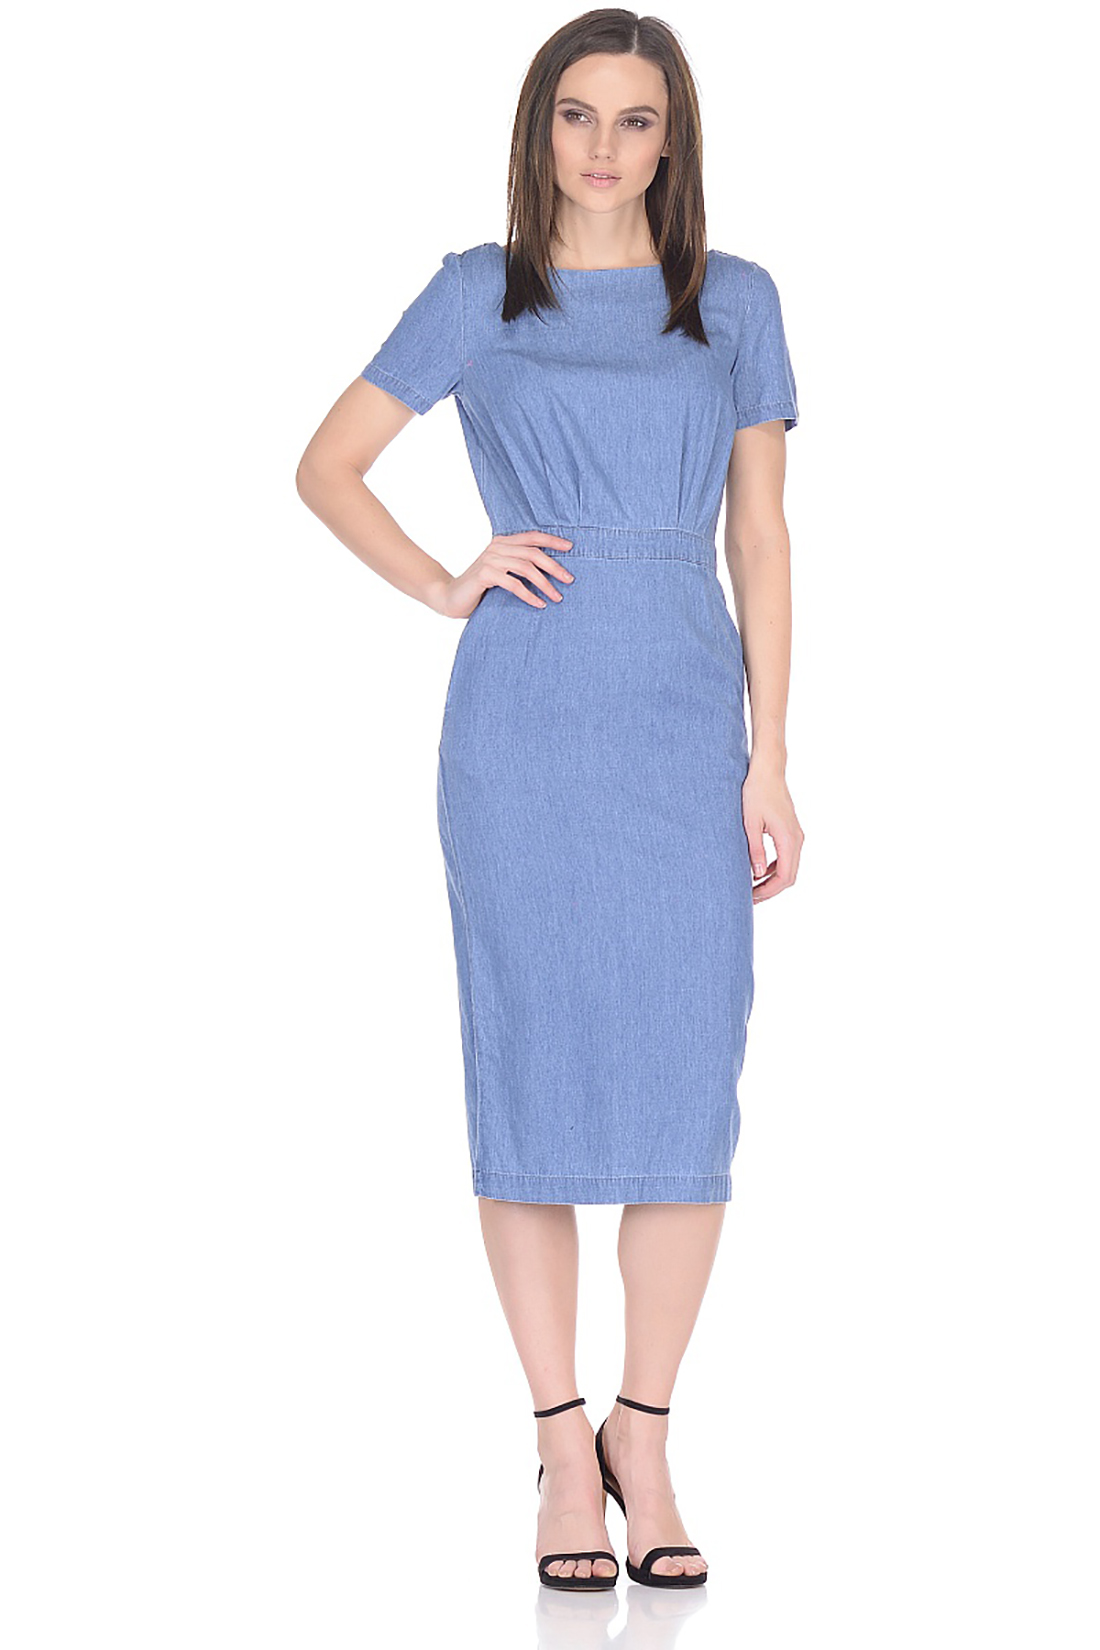 Платье-миди из денима (арт. baon B458108), размер XXL, цвет blue denim#голубой Платье-миди из денима (арт. baon B458108) - фото 1